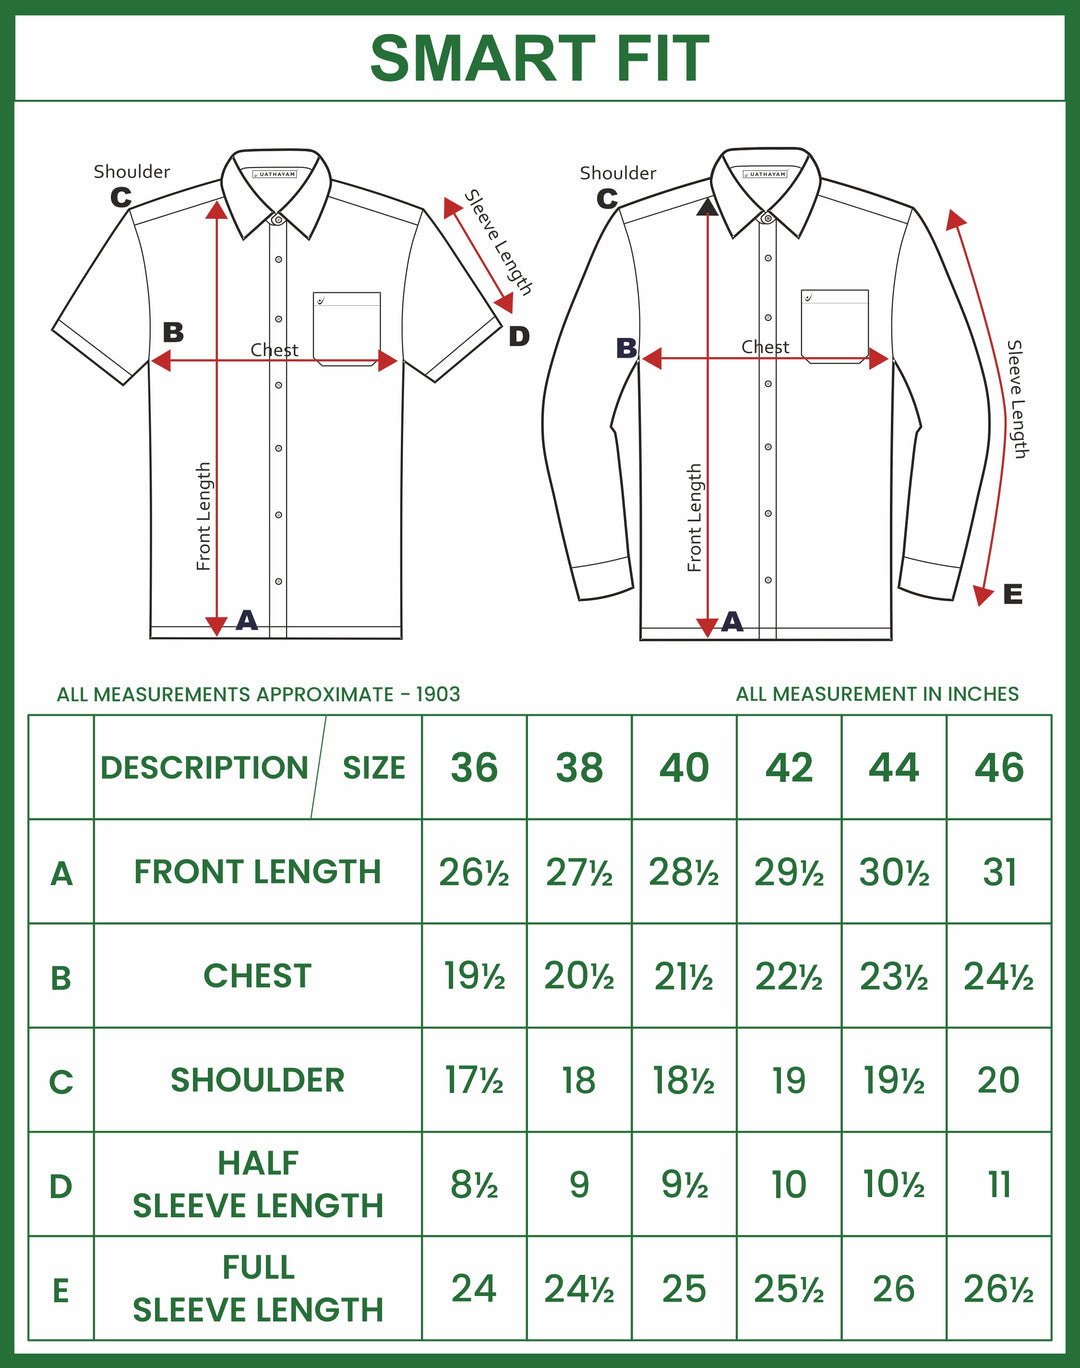 UATHAYAM Varna Matching Dhoti & Shirt Set Half Sleeves Summer Green-11017